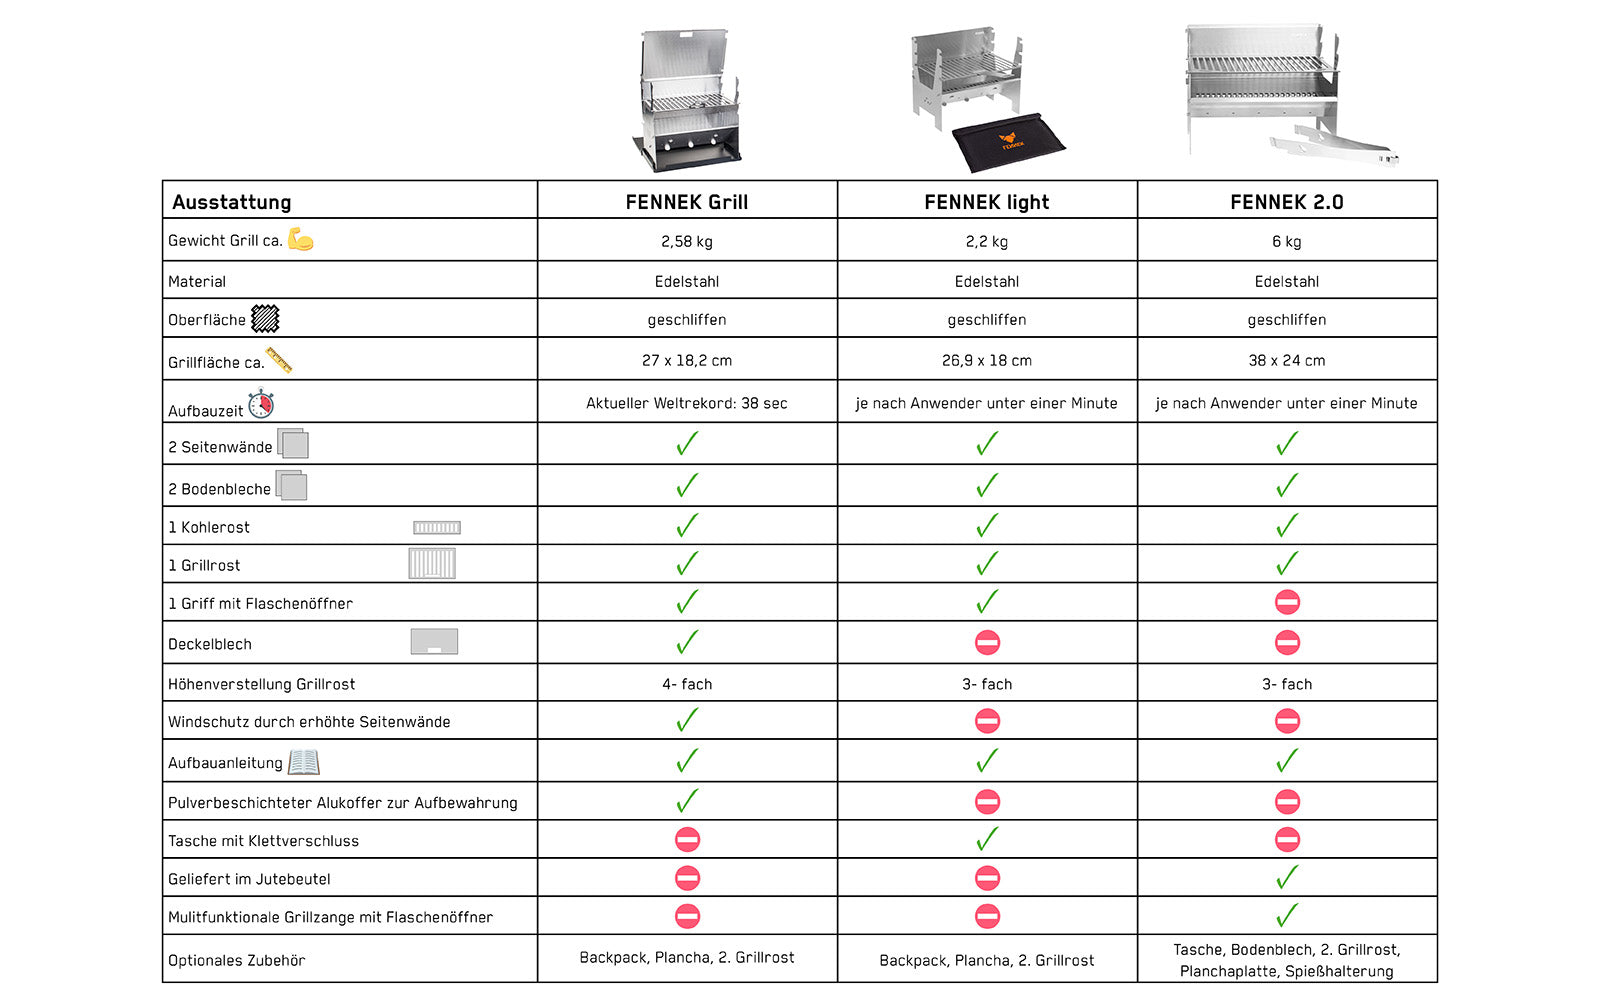 Vergleichstabelle mit Fennek Grill, Light und 2.0 und ihren Details und Unterschieden